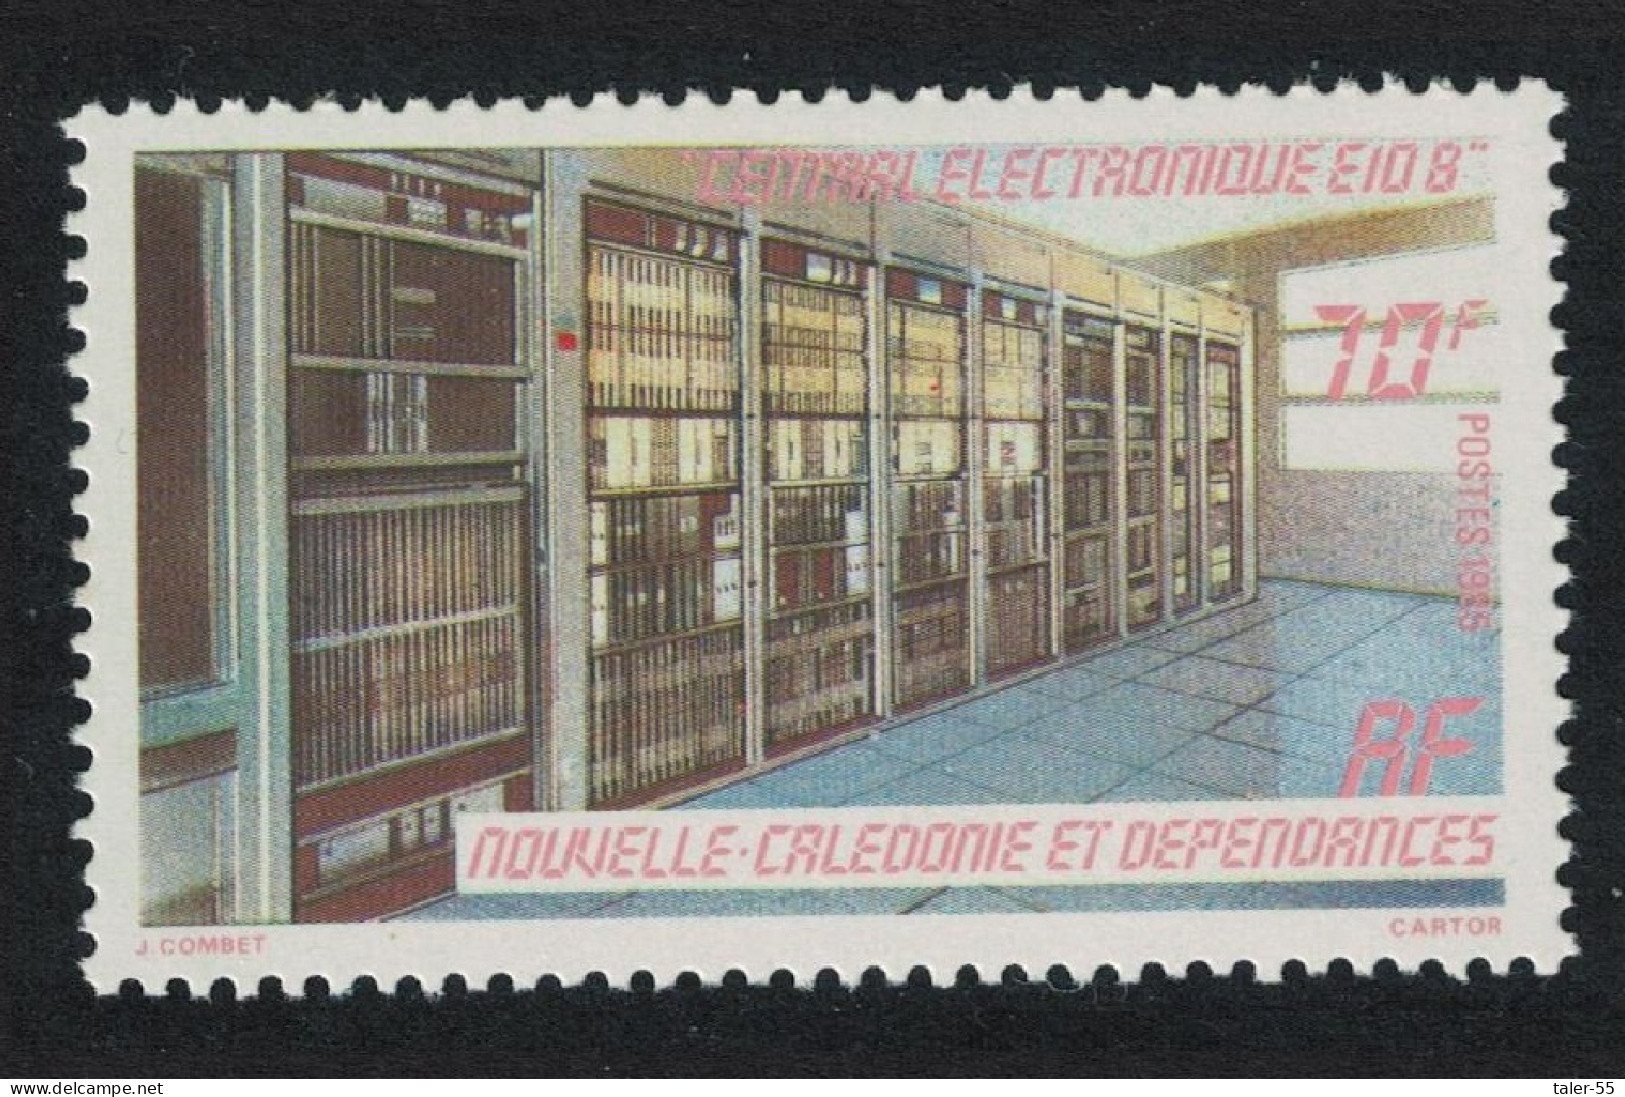 New Caledonia Inauguration Of Electronic Telephone Equipment 1985 MNH SG#765 - Ongebruikt